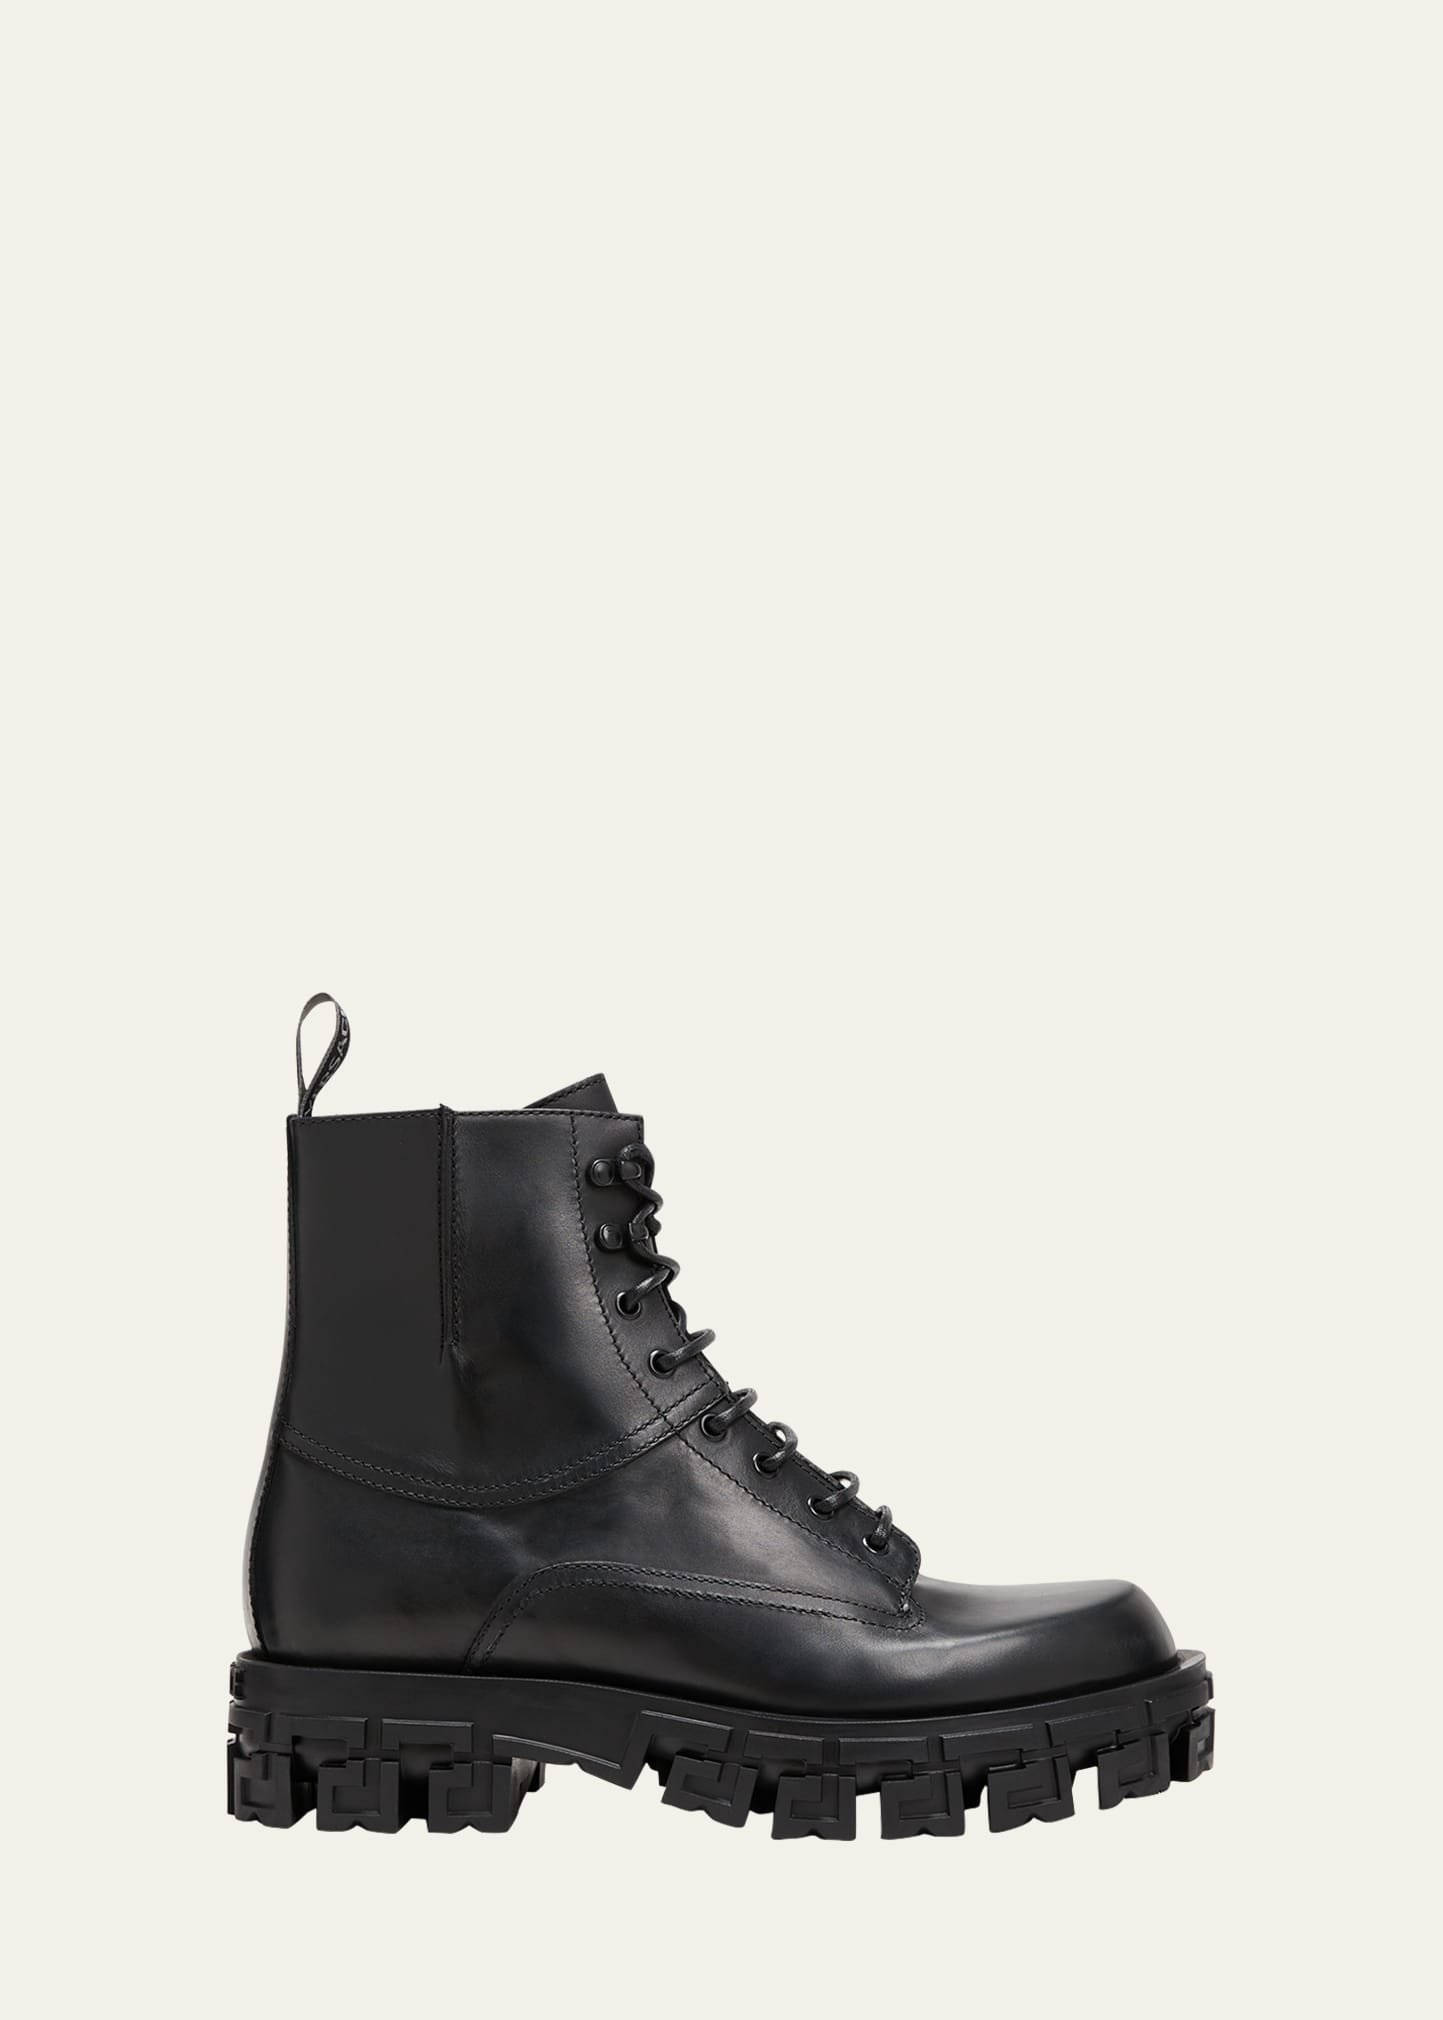 Versace Men's Greca-sole Leather Combat Boots In Black